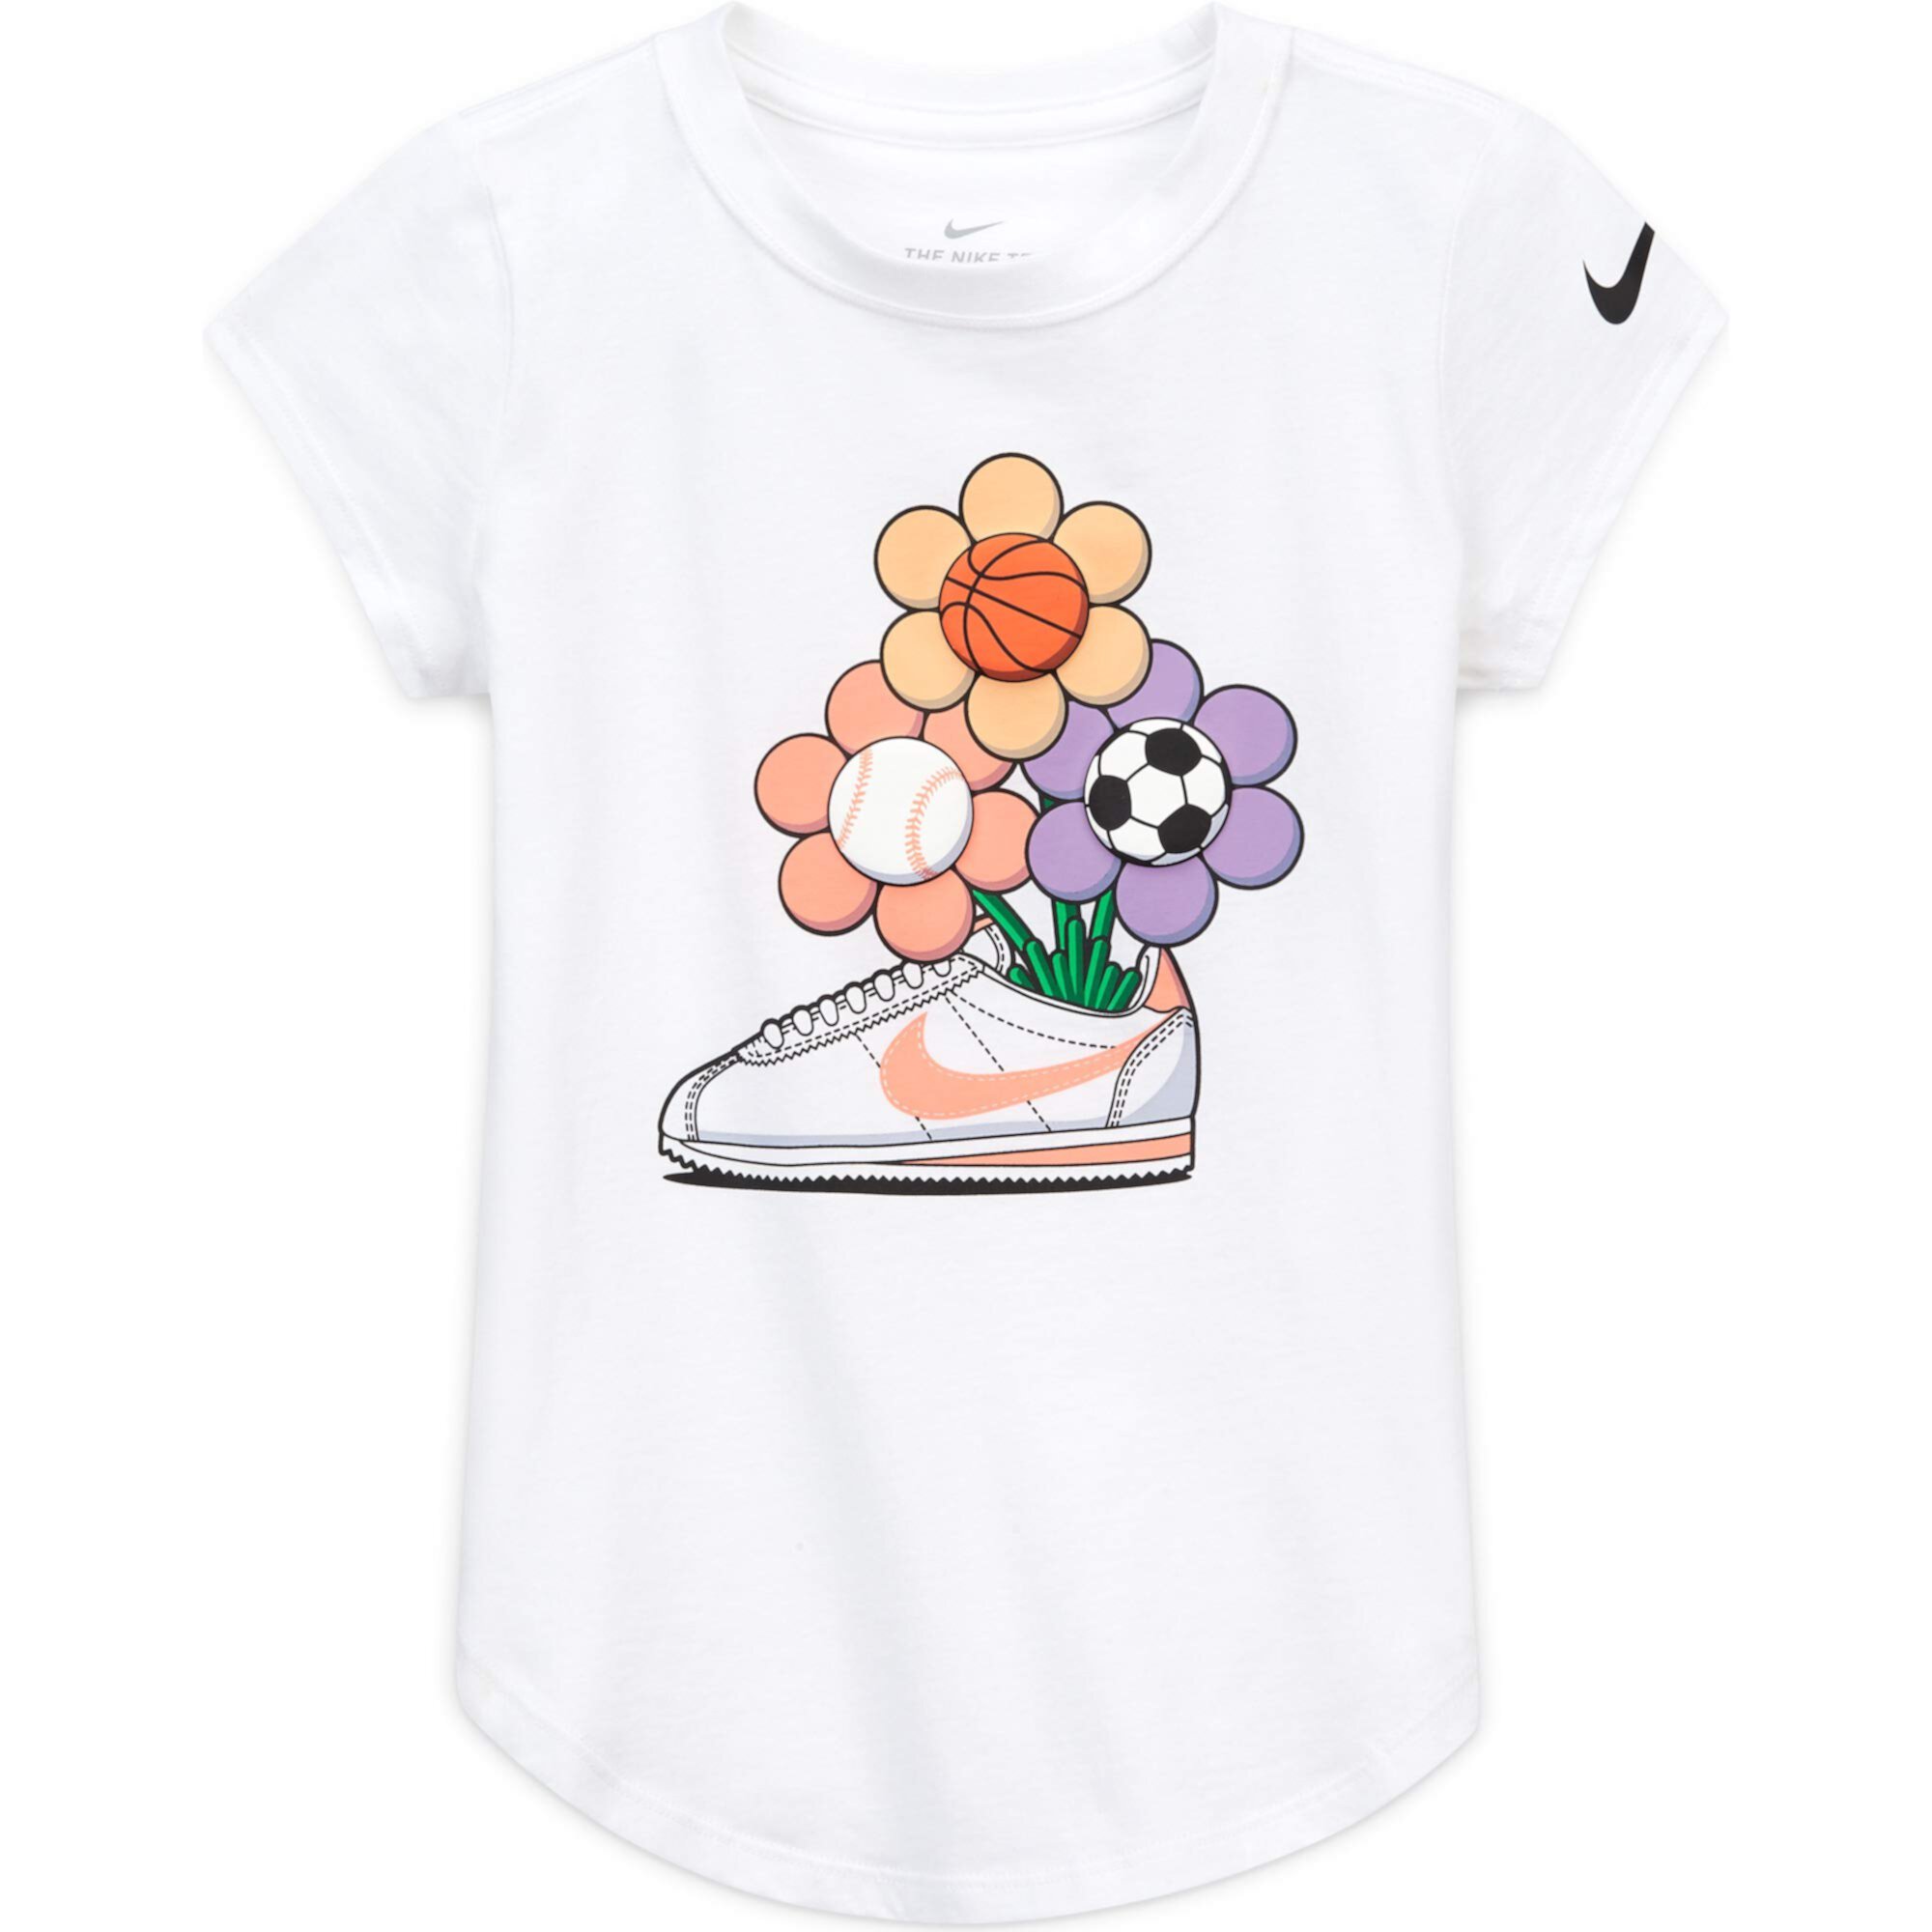 Футболка с короткими рукавами и рисунком кроссовок Cortez (для маленьких детей) Nike Kids